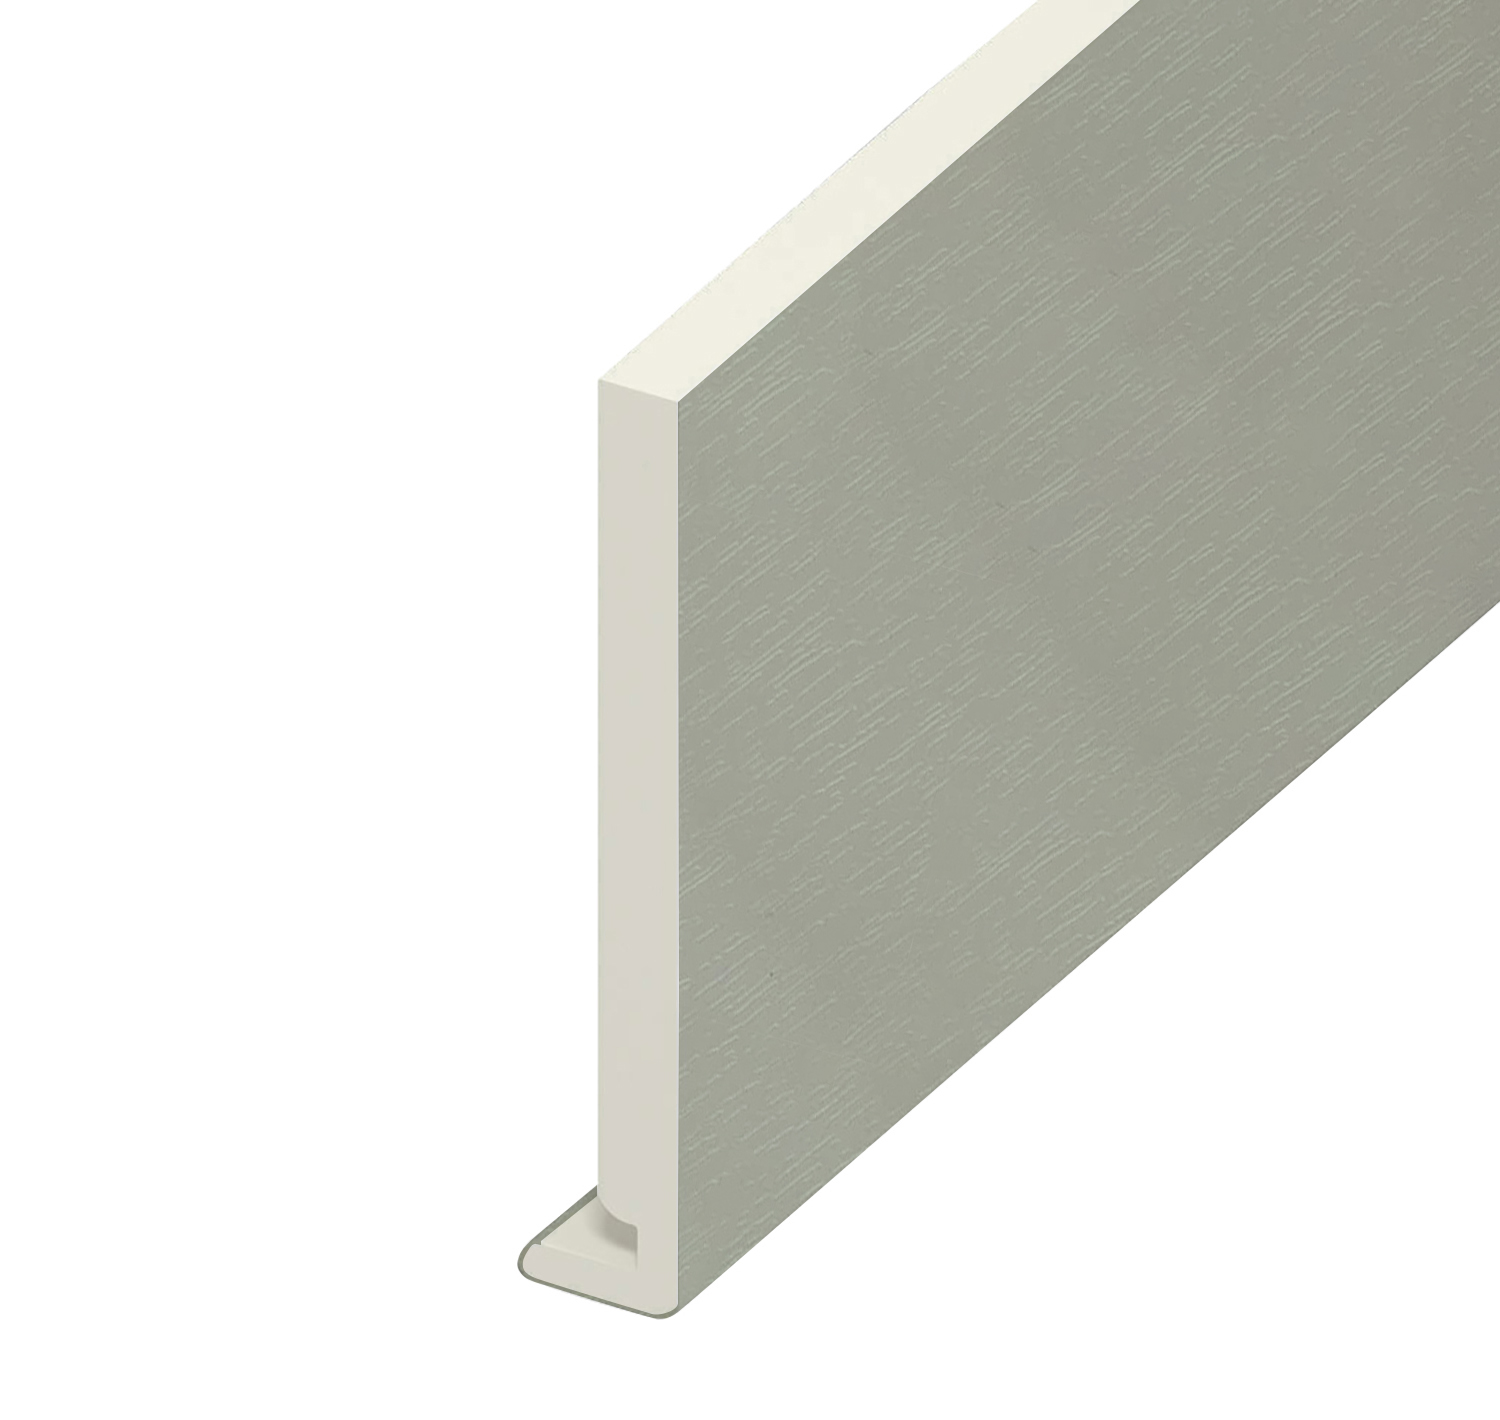 16mm Square Edge Fascia Board Agate Grey